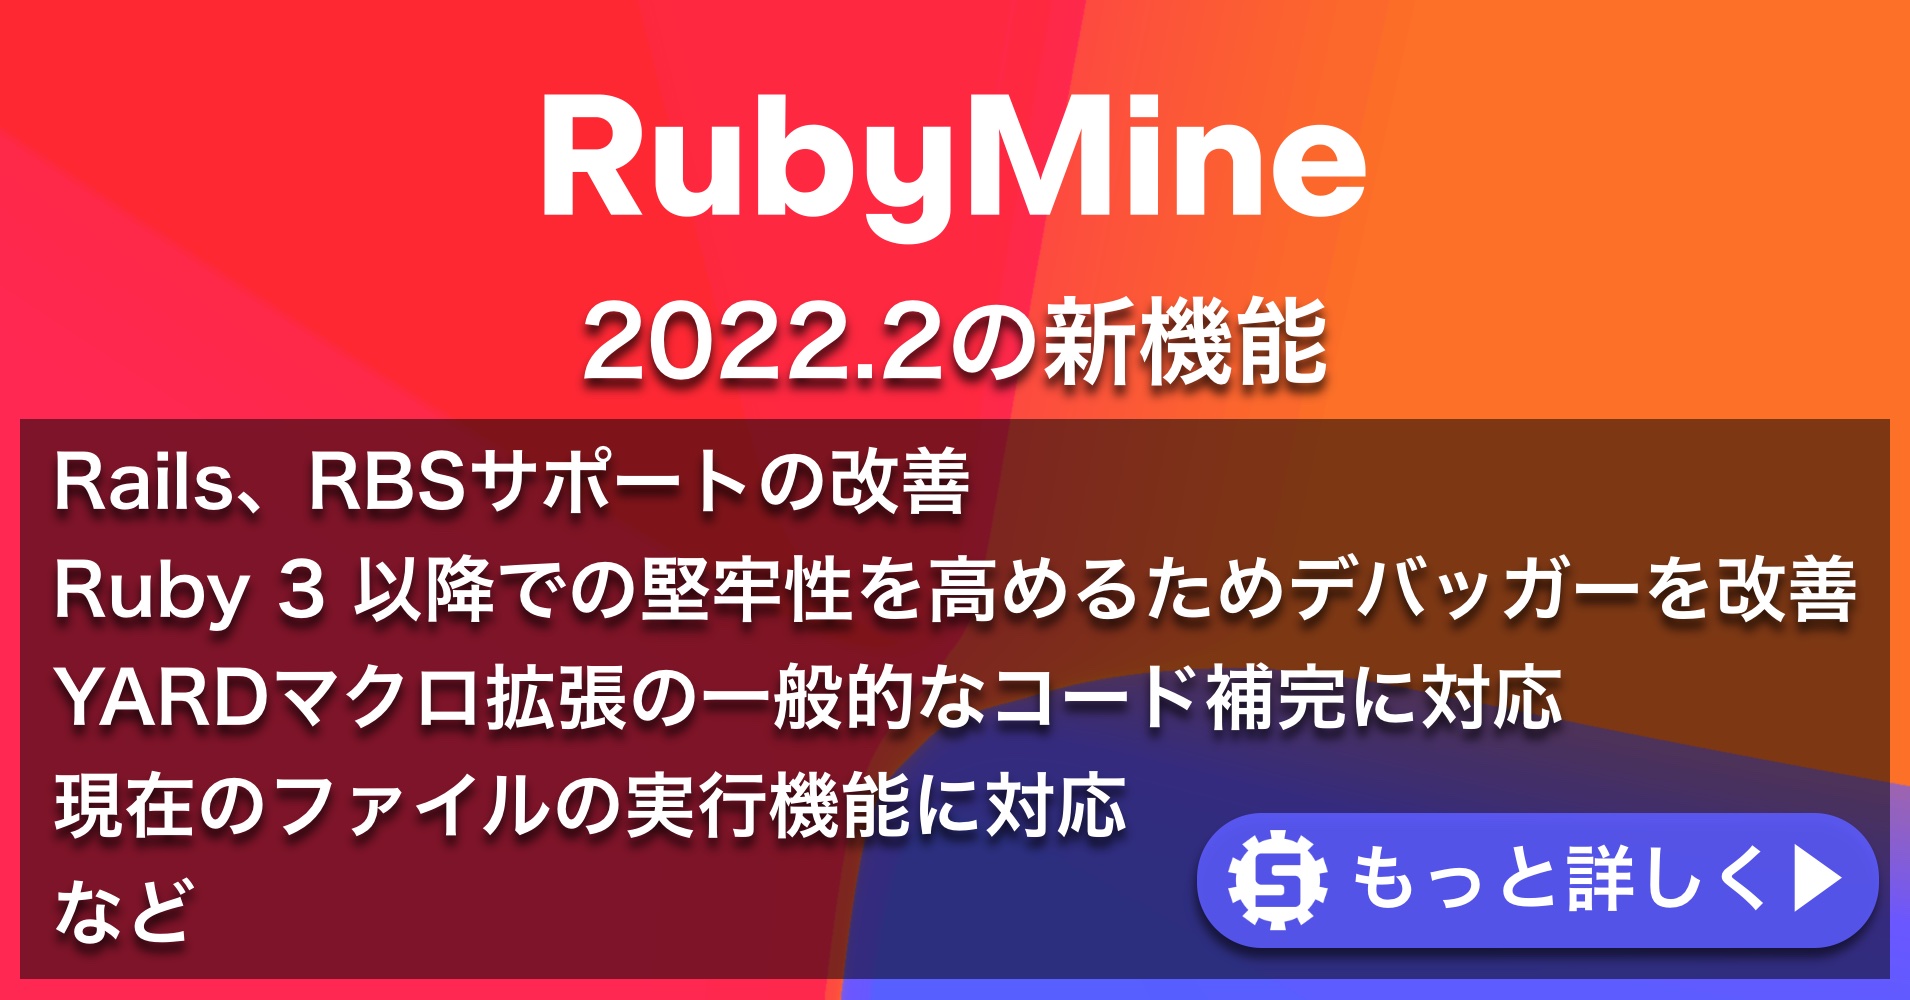 RubyMine 2022.2の新機能